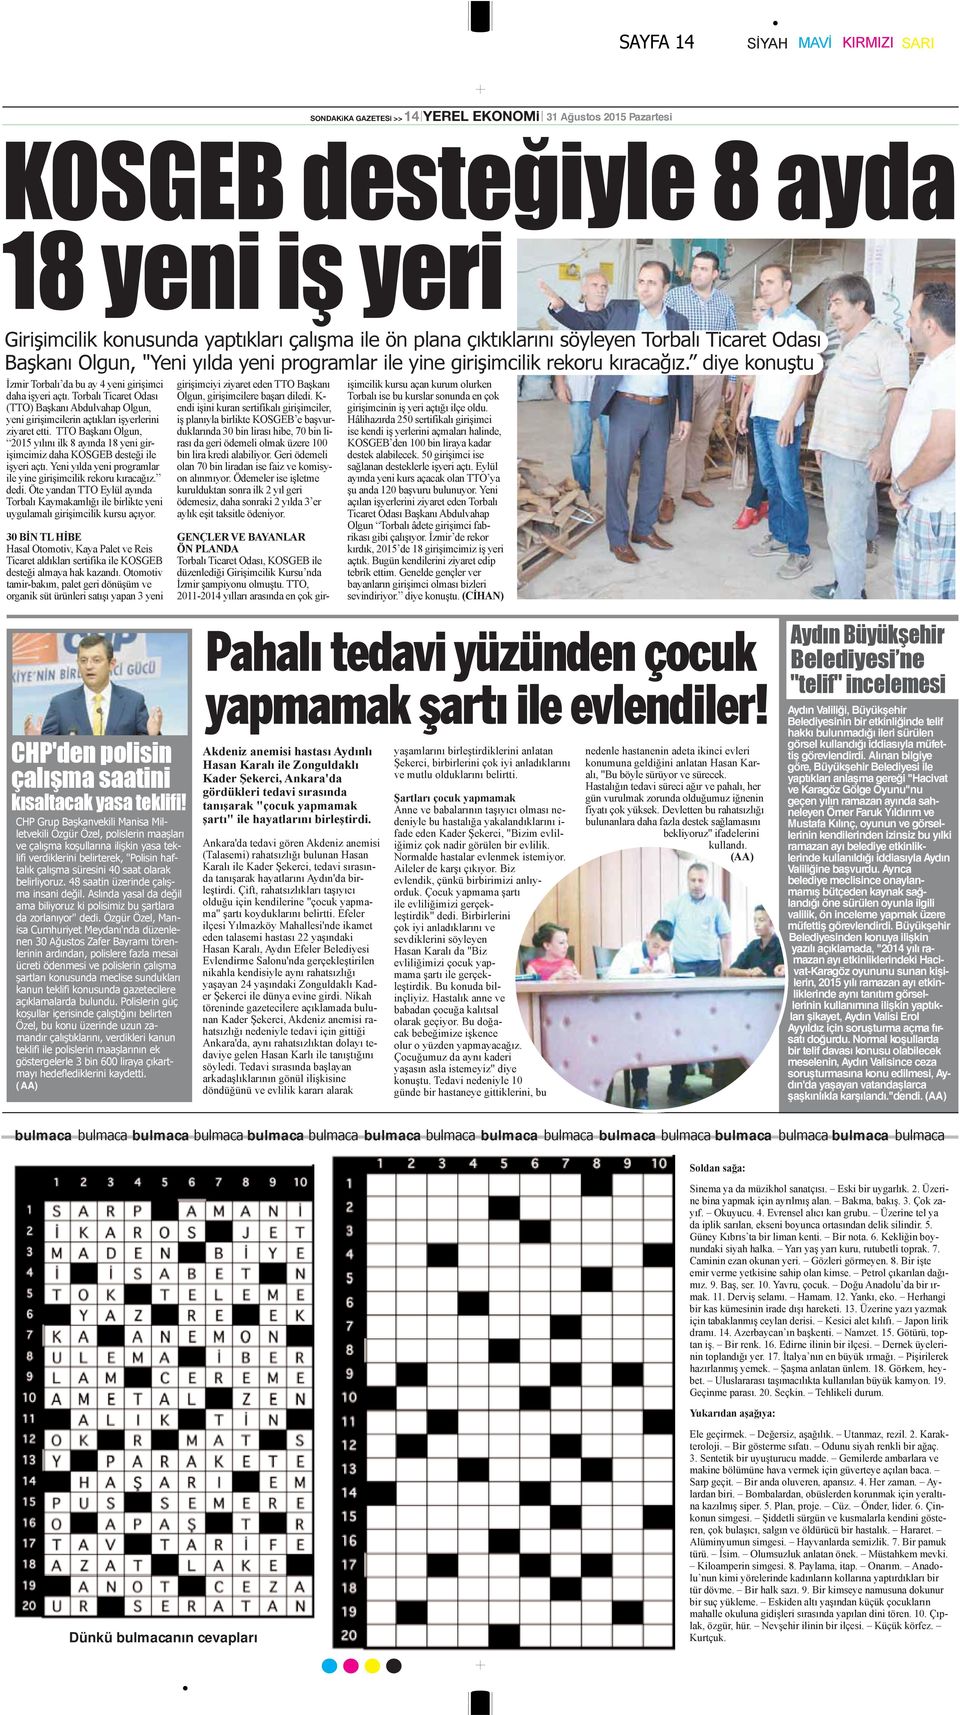 diye konuştu İzmir Torbalı da bu ay 4 yeni girişimci daha işyeri açtı. Torbalı Ticaret Odası (TTO) Başkanı Abdulvahap Olgun, yeni girişimcilerin açtıkları işyerlerini ziyaret etti.